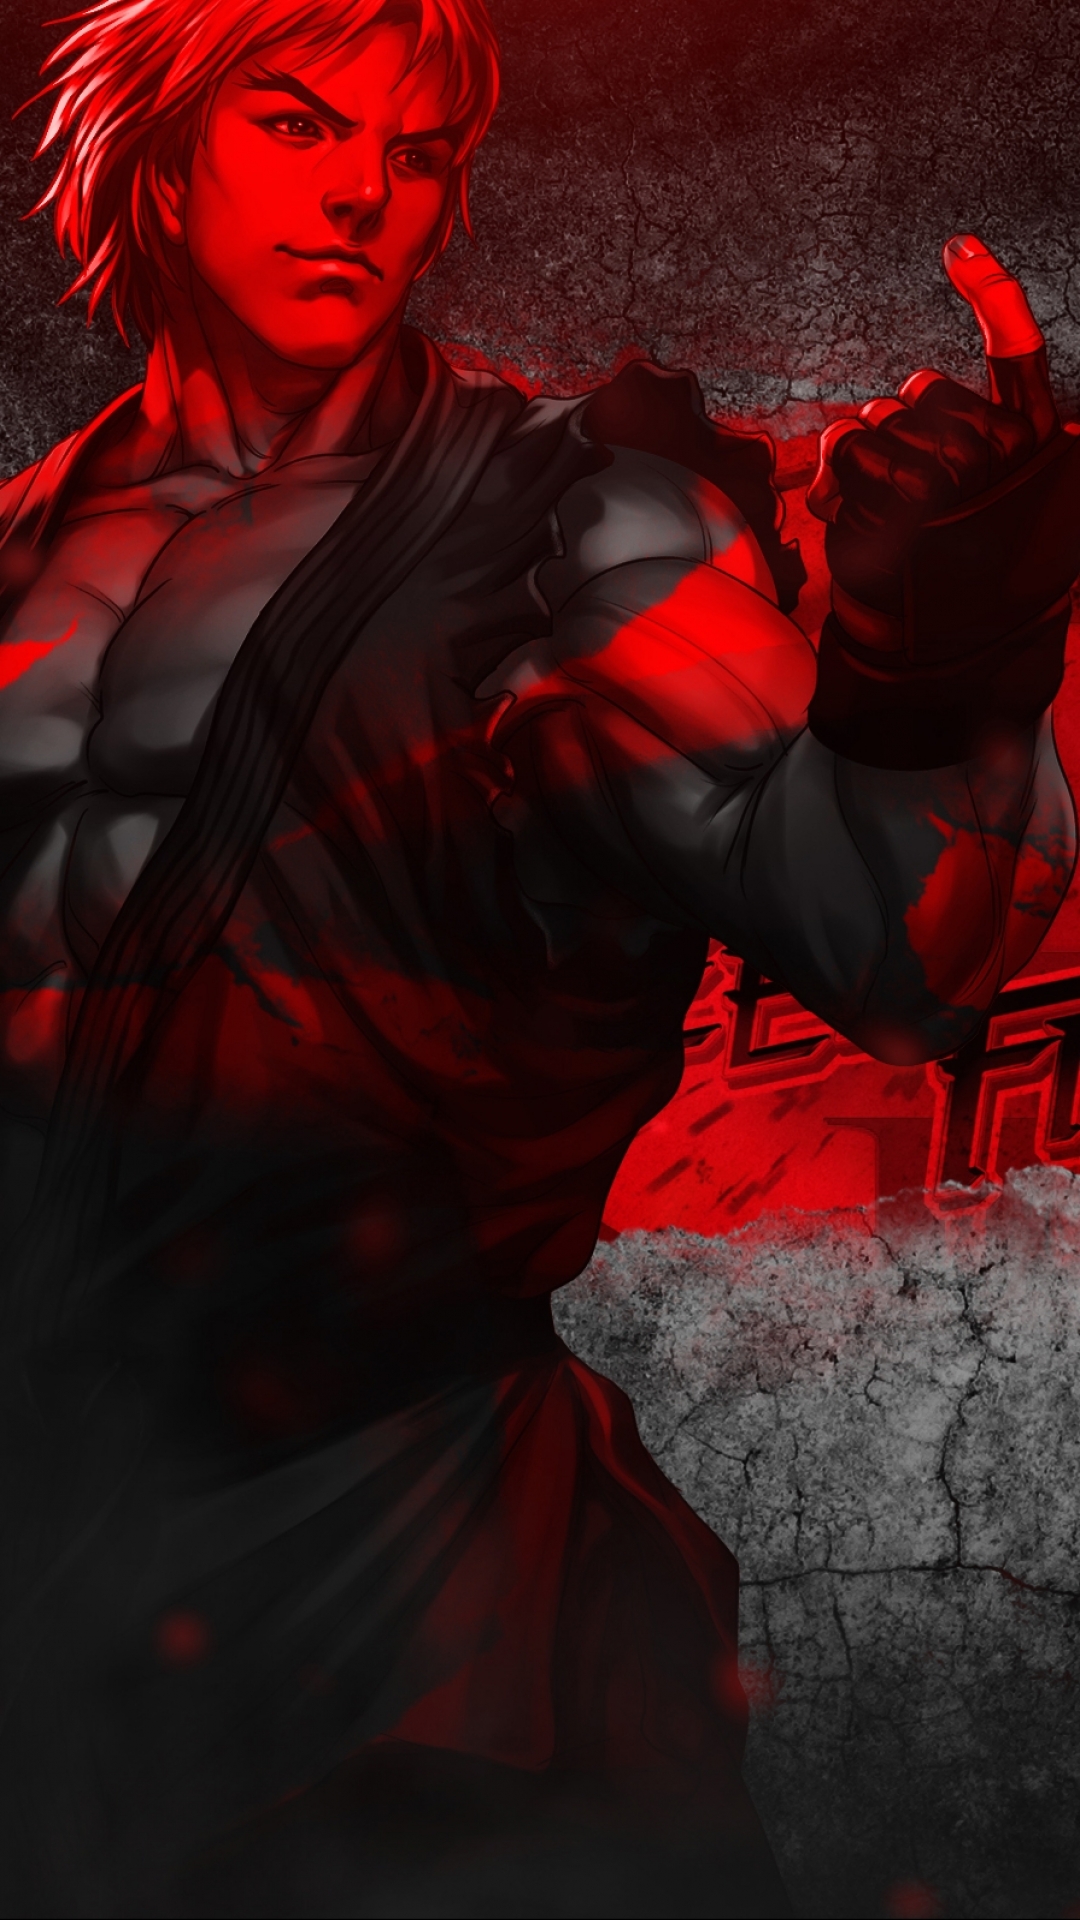 luchador callejero fondo de pantalla para iphone,rojo,demonio,oscuridad,ilustración,cg artwork